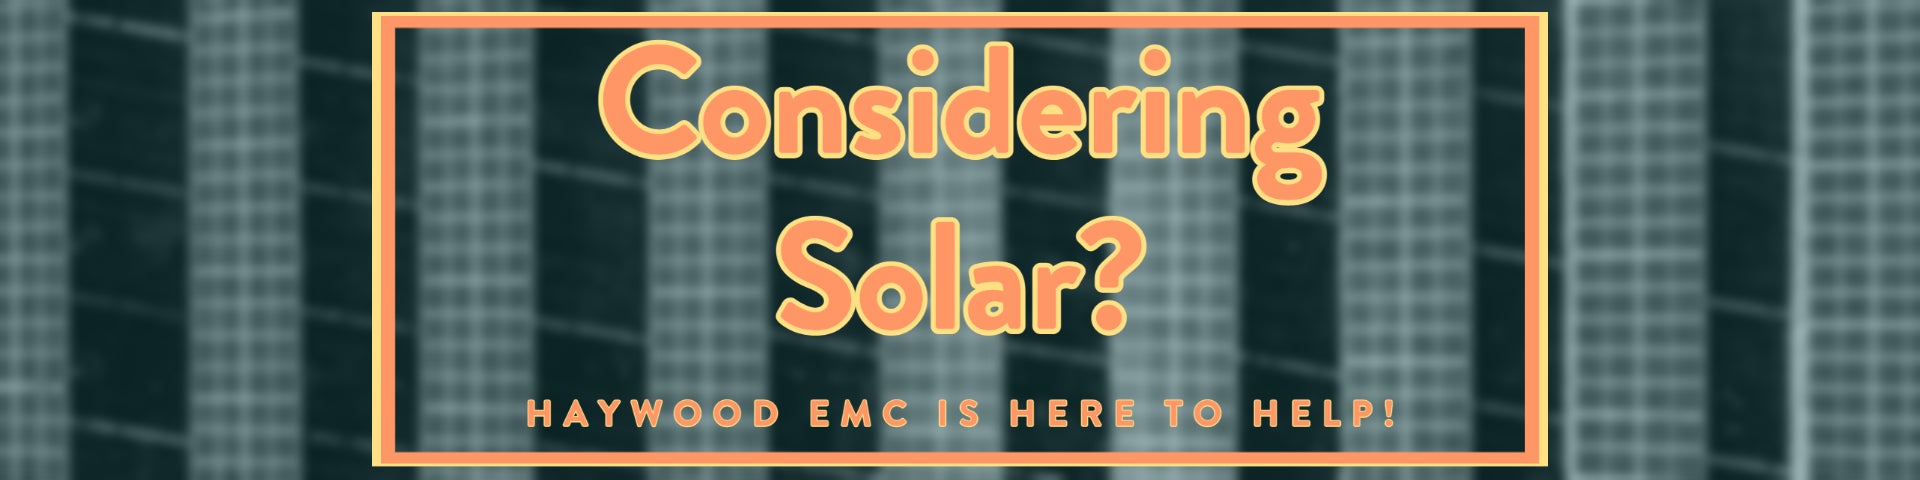 considering solar